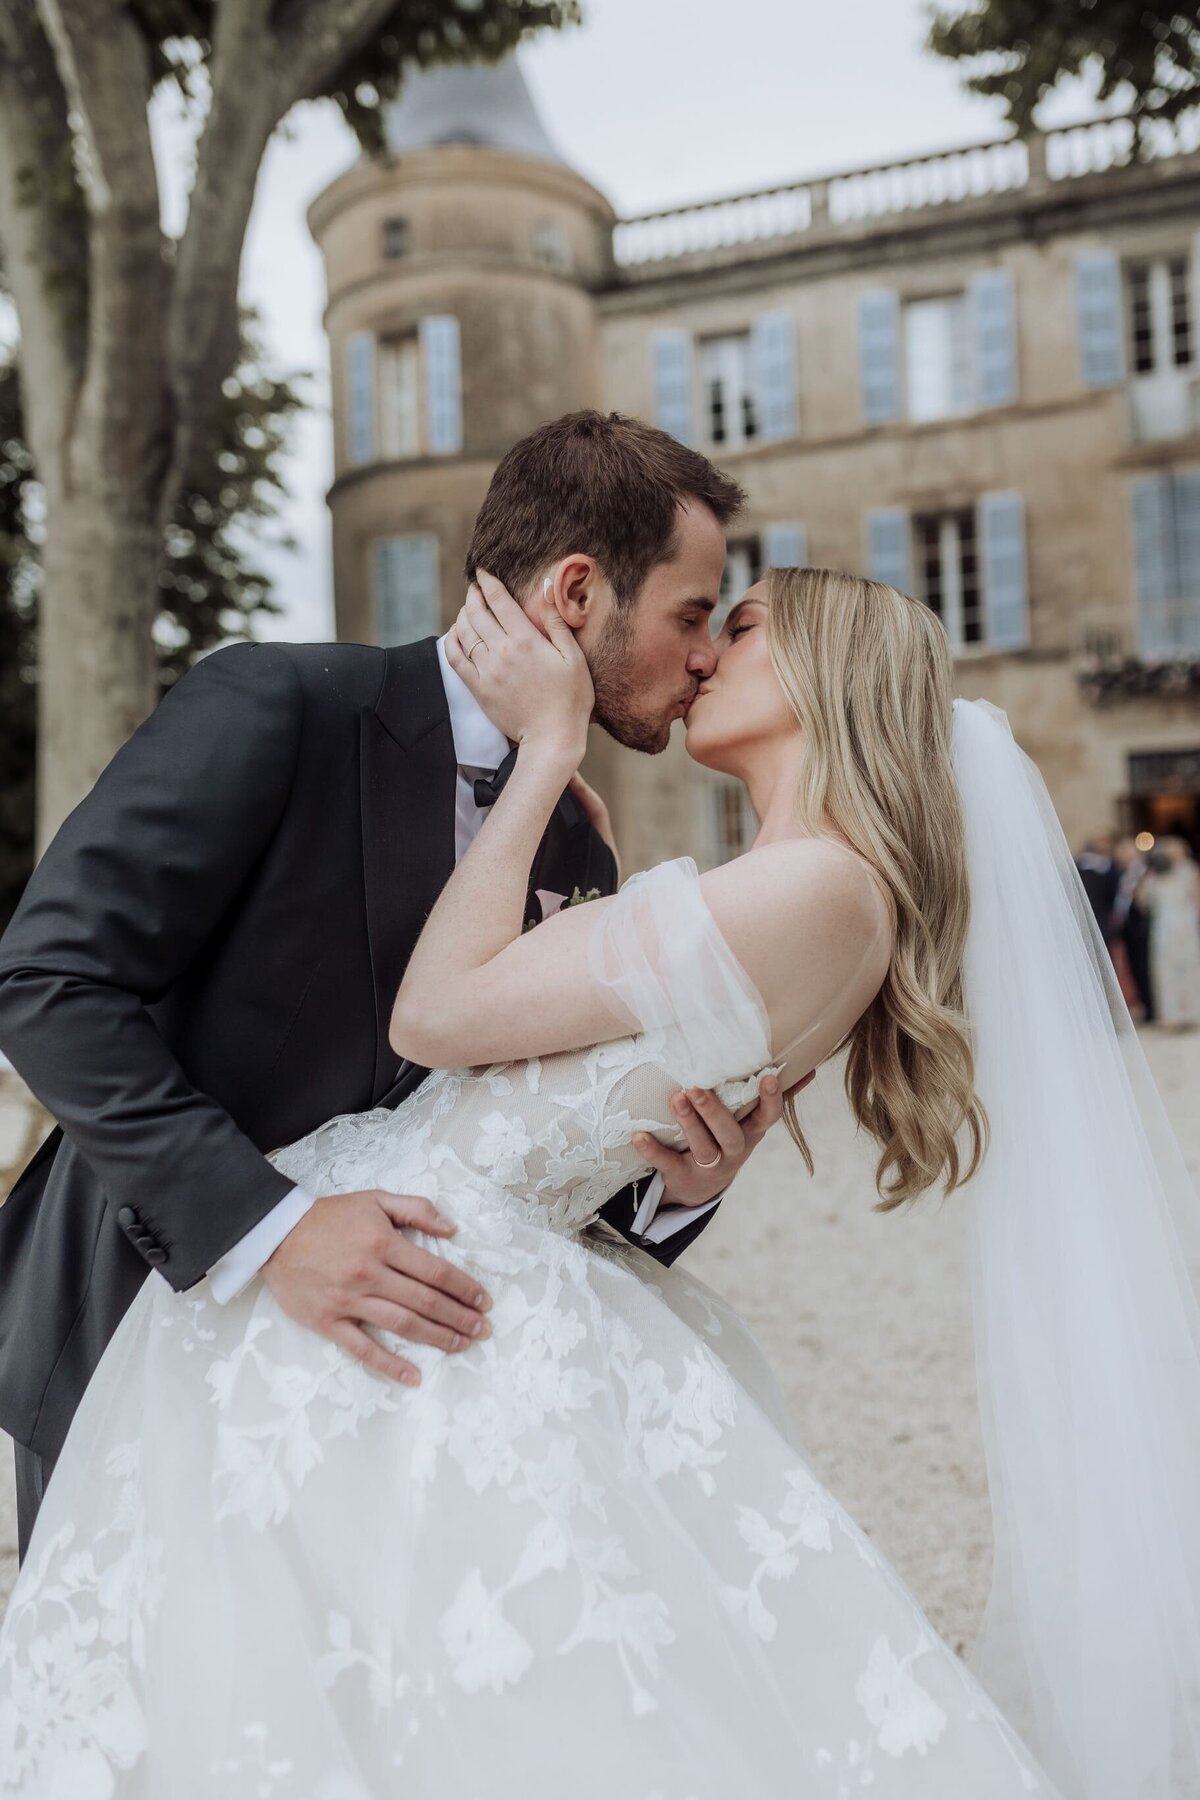 Riviera-chateau-wedding-Monique-Lhuillier-lace-dress